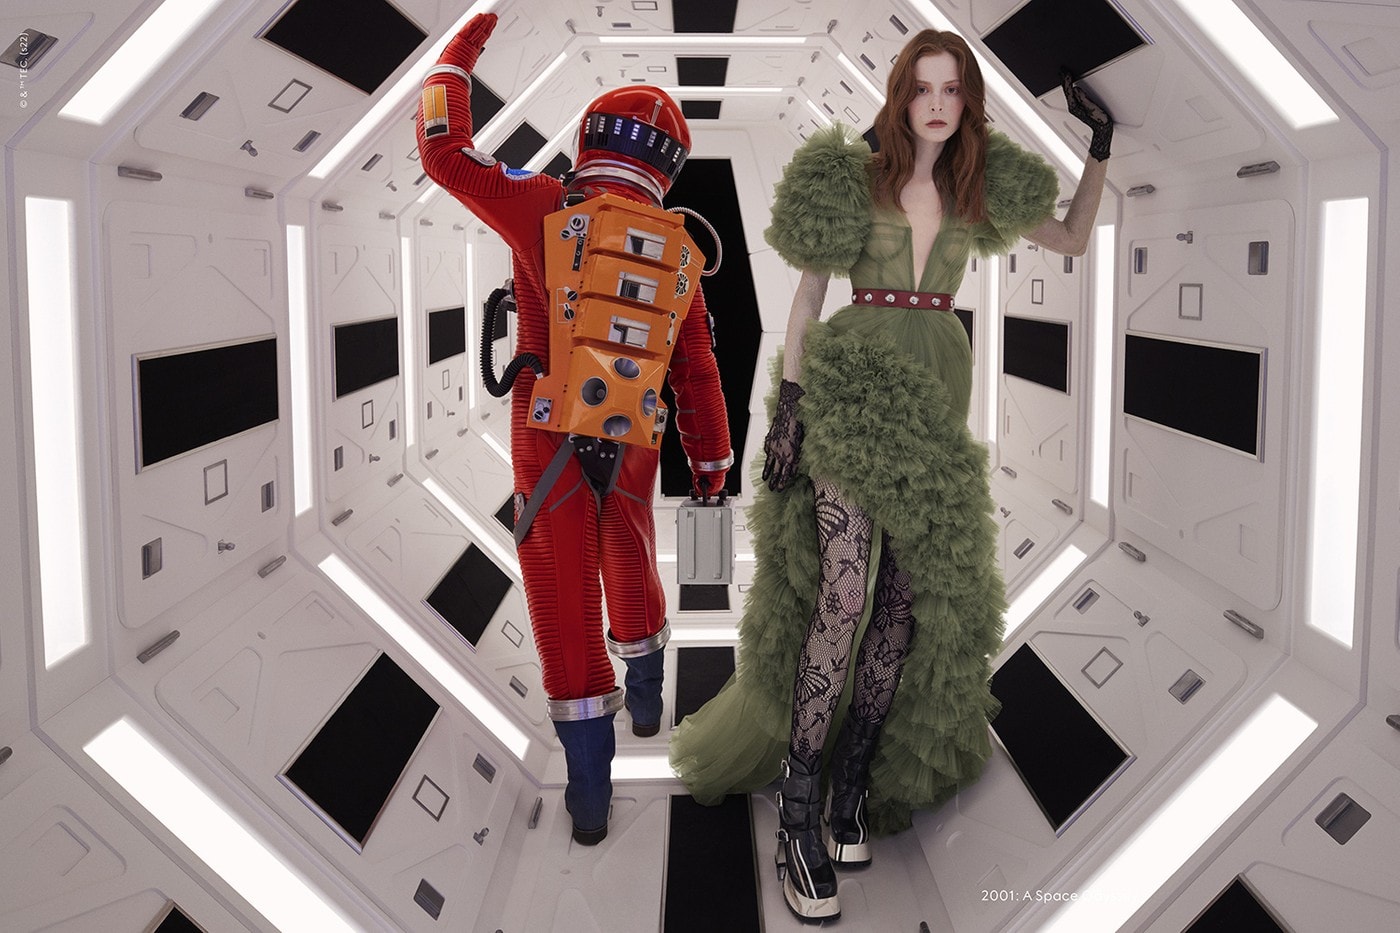 Gucci 最新形象广告向 Stanley Kubrick《发条橙》、《闪灵》等片致敬